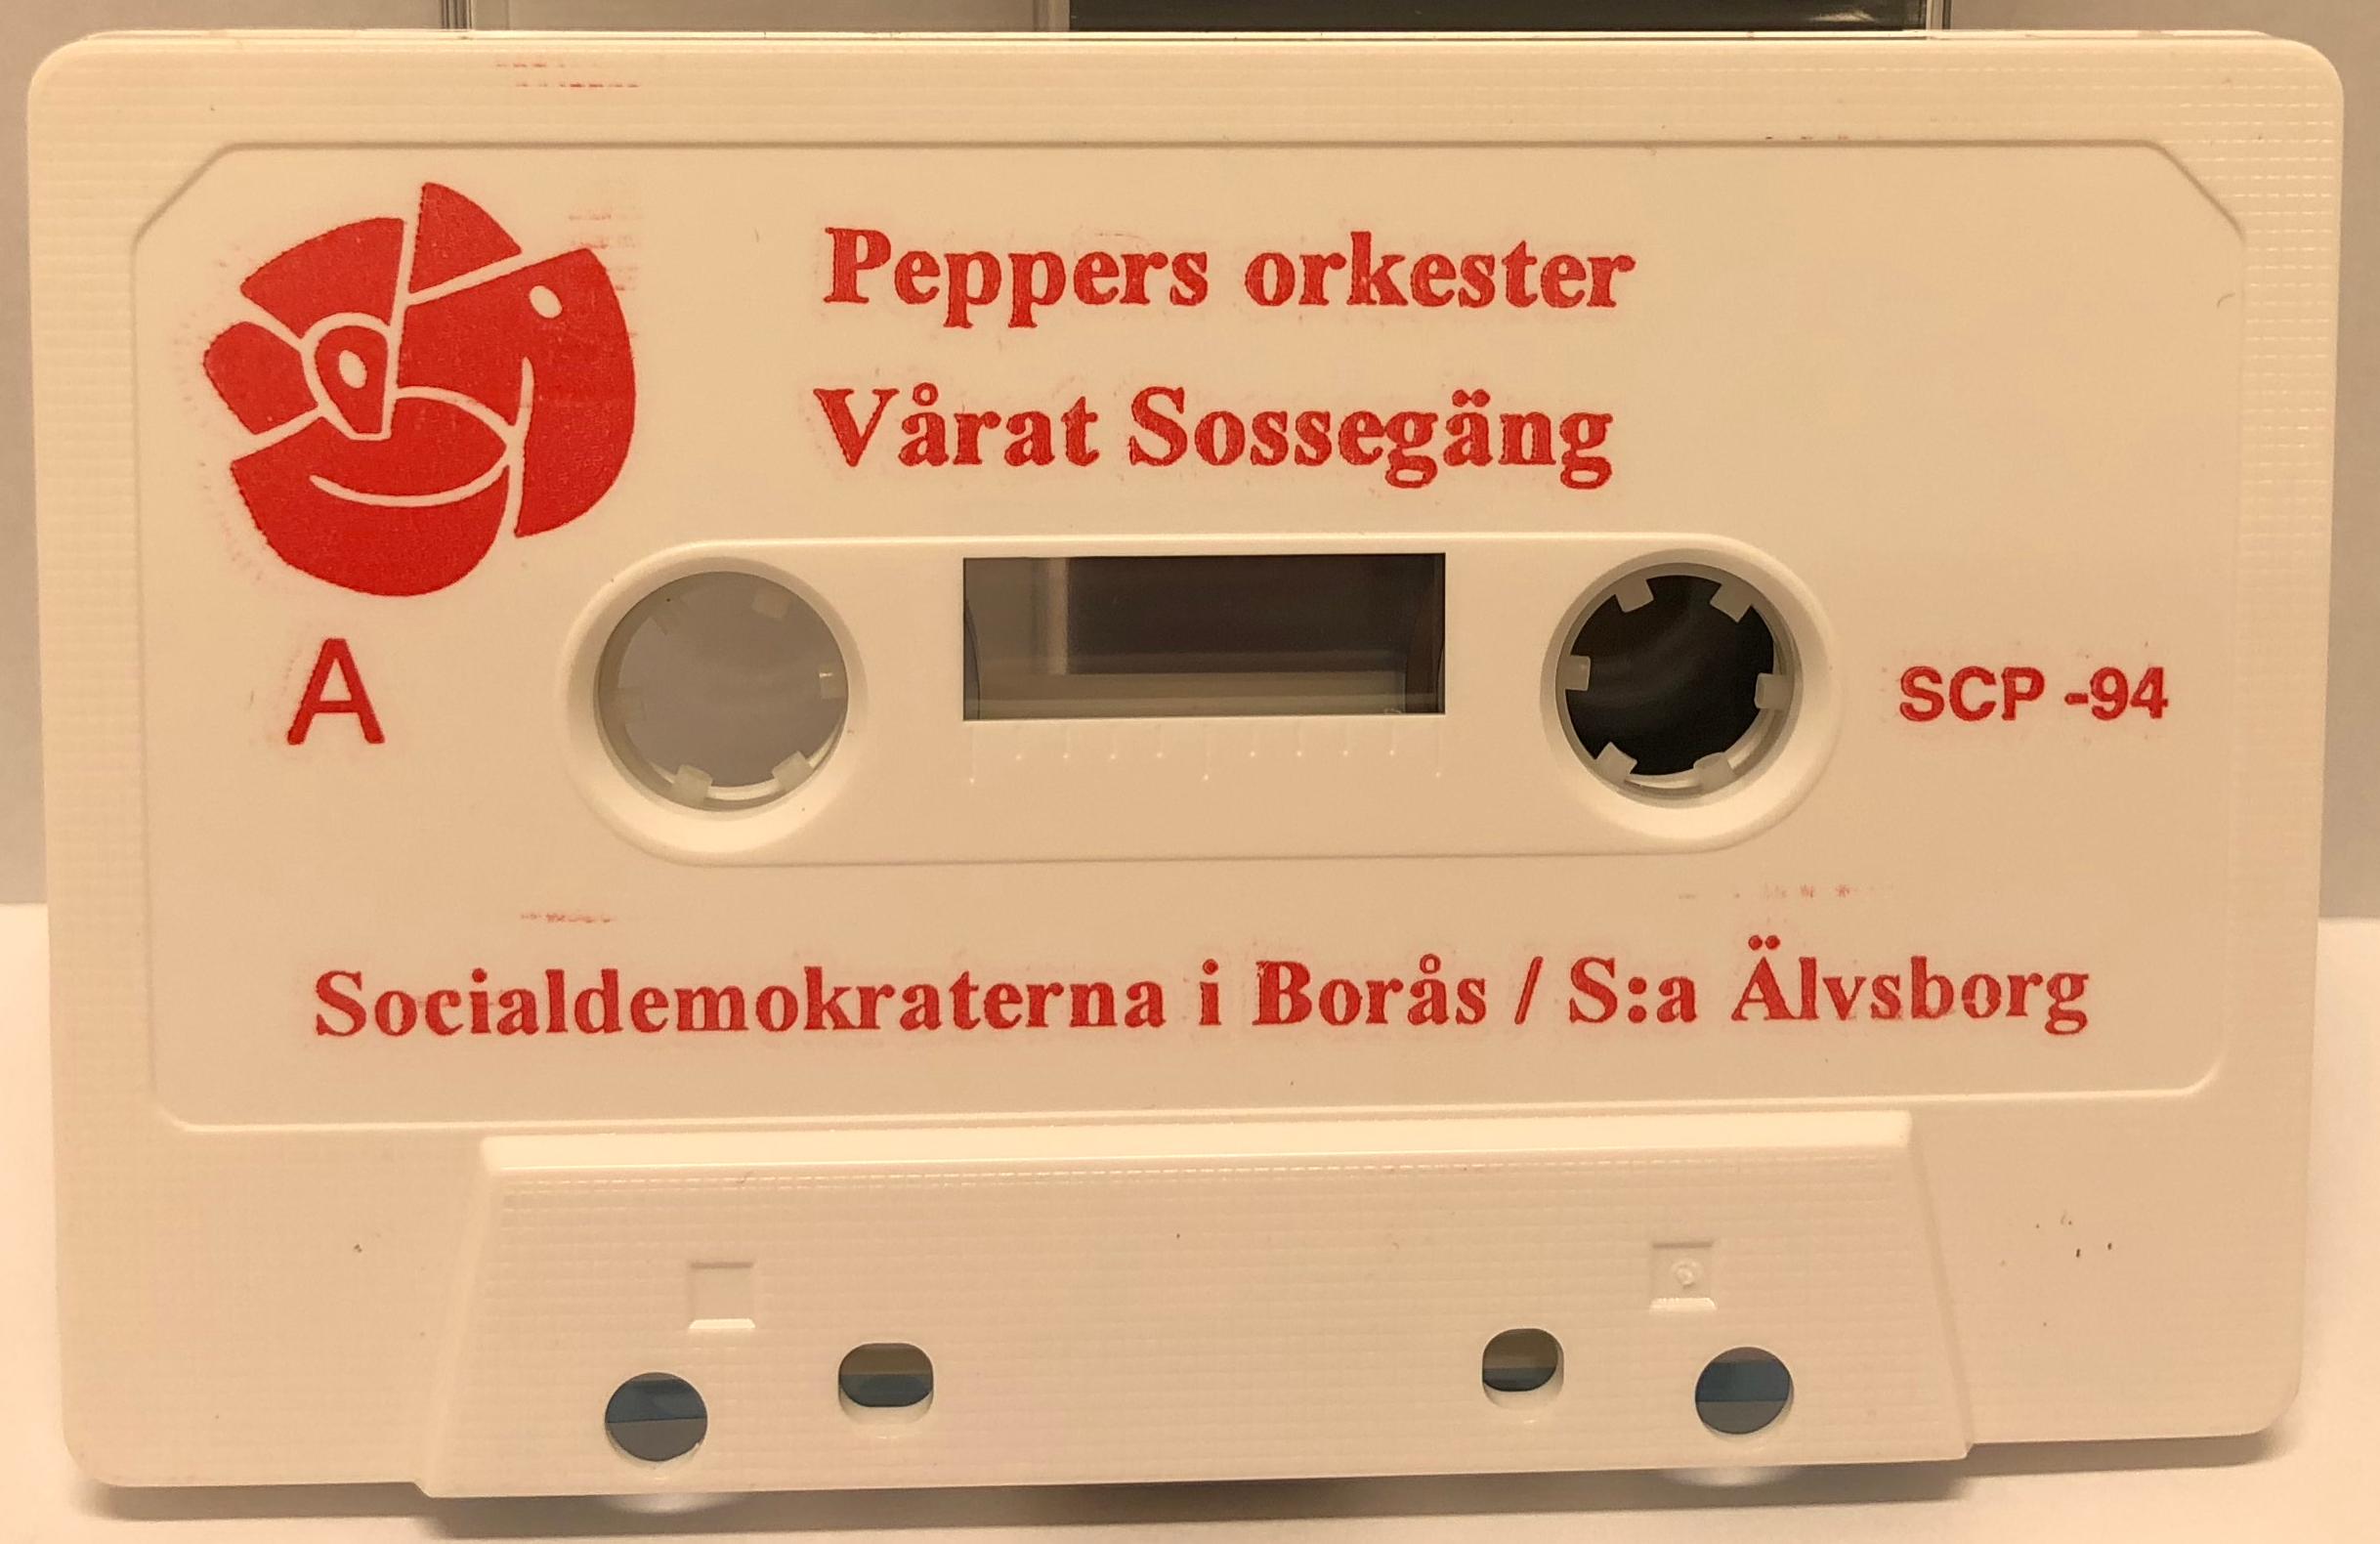 Spartansk design på kassetten av Peppers orkester från Borås med "Vårat Sossegäng", 1994